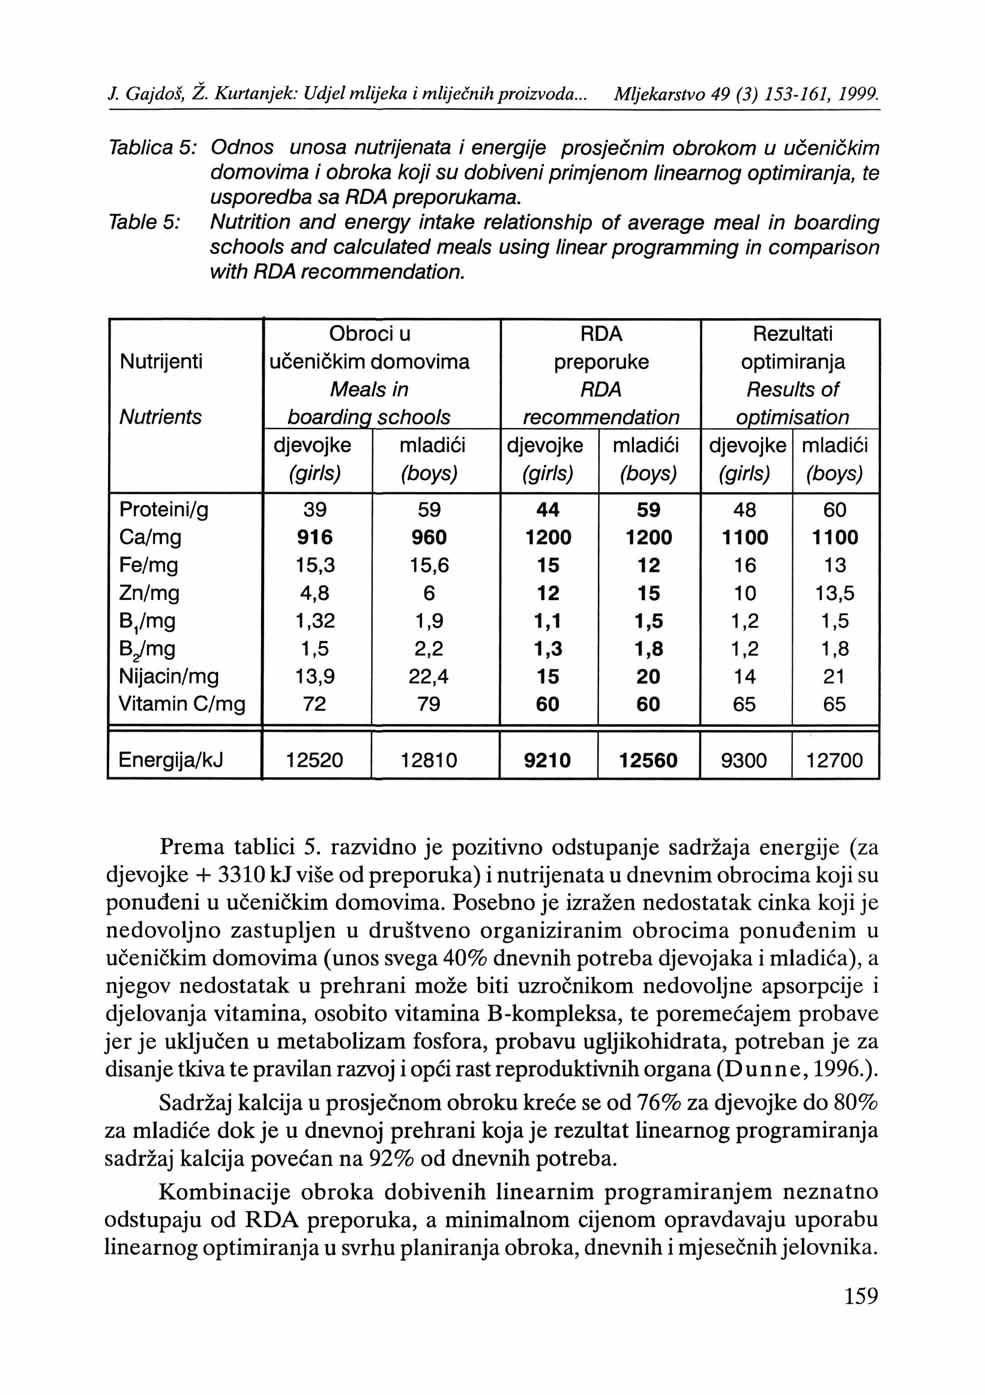 Tablica 5: Odnos unosa nutrijenata i energije prosječnim obroi<om u učeničkim domovima i obrol<a l<oji su dobiveni primjenom linearnog optimiranja, te usporedba sa RDA preporukama.